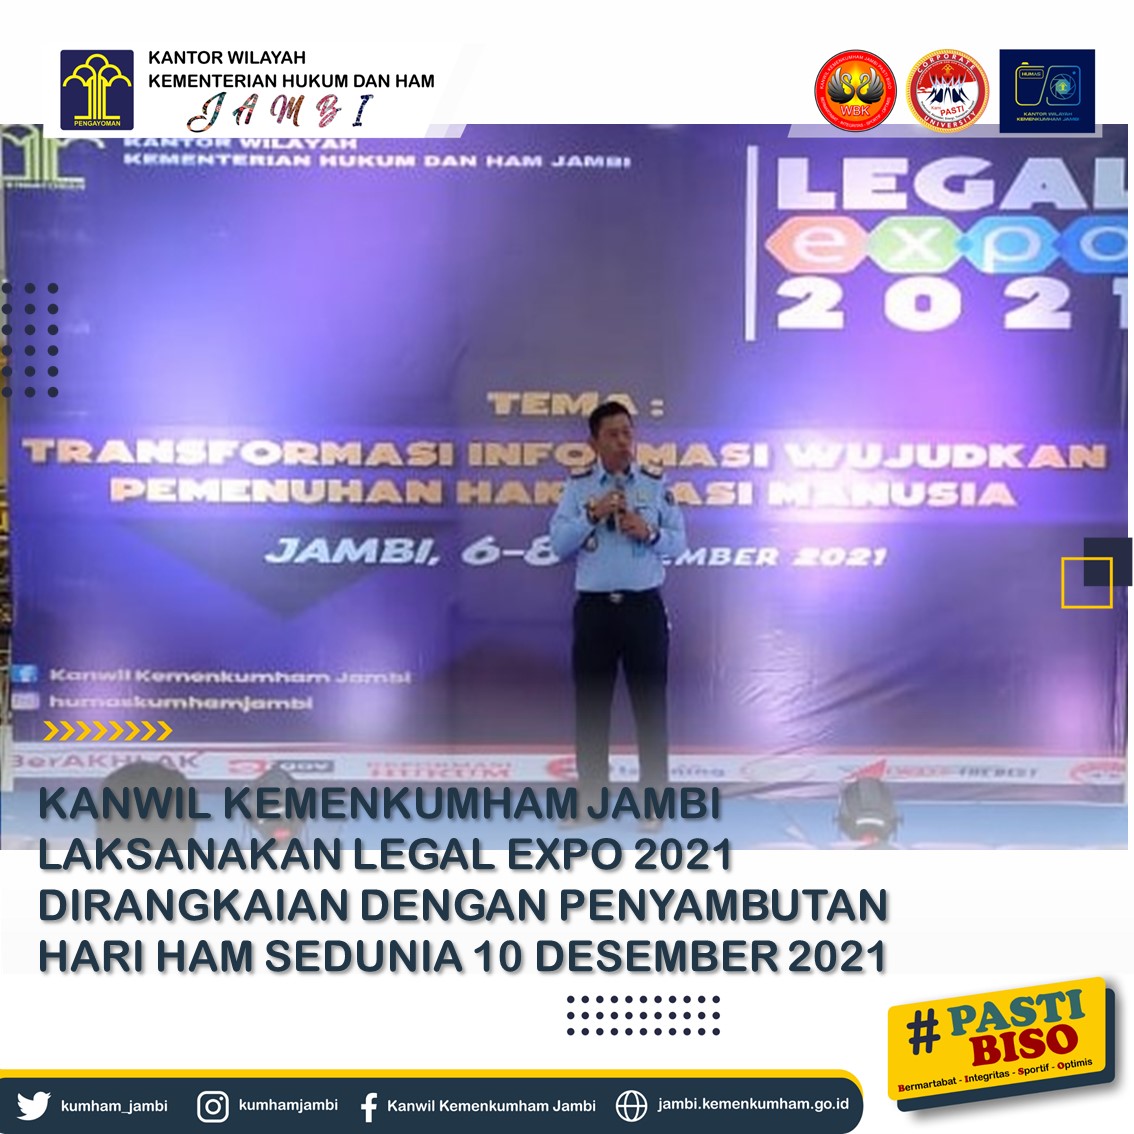 Kanwil Kemenkumham Jambi Laksanakan Legal Expo 2021 Dirangkaian Dengan Penyambutan Hari HAM Sedunia 10 Desember 2021